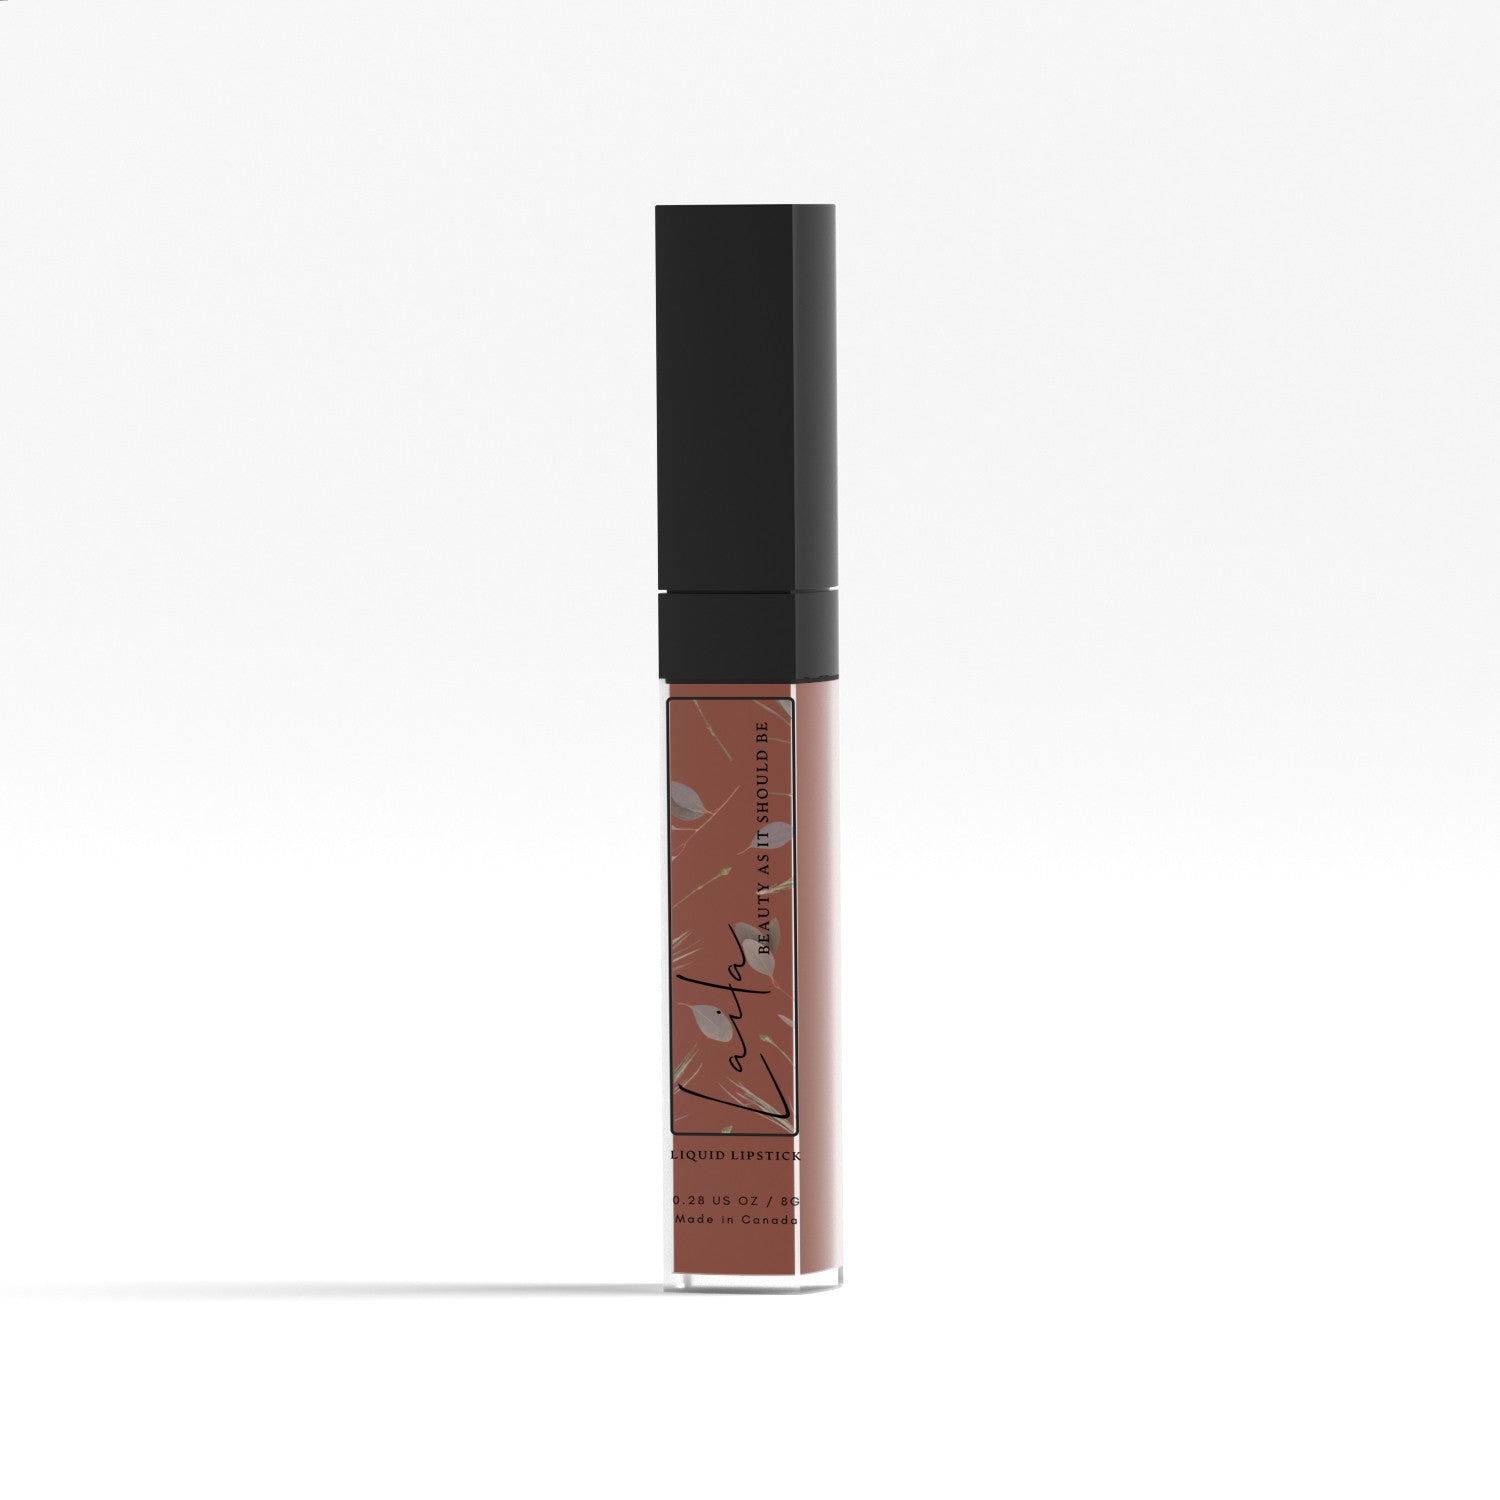 Spell Bond - Matte Liquid Lipstick Default Title Liquid Lipstick - Laila Beauty Care Liquid Lipstick